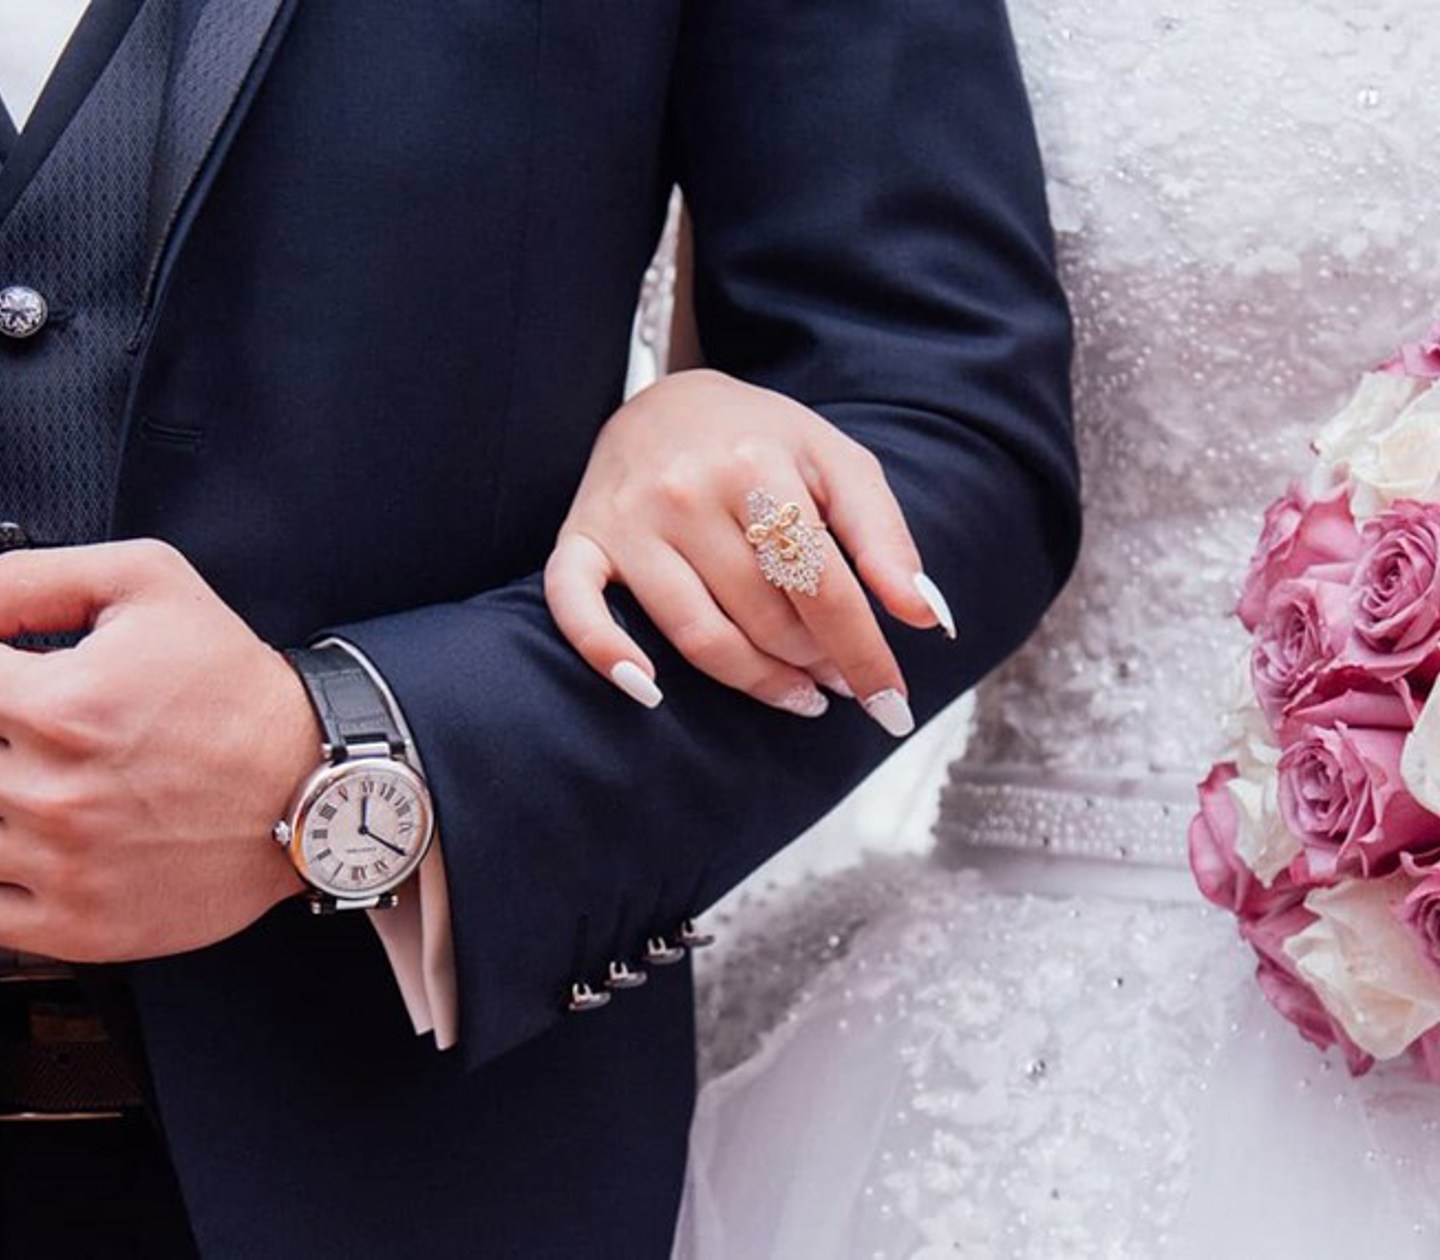 En kvinna i bröllopsklänning håller ena handen runt sin man och en bukett i den andra handen.